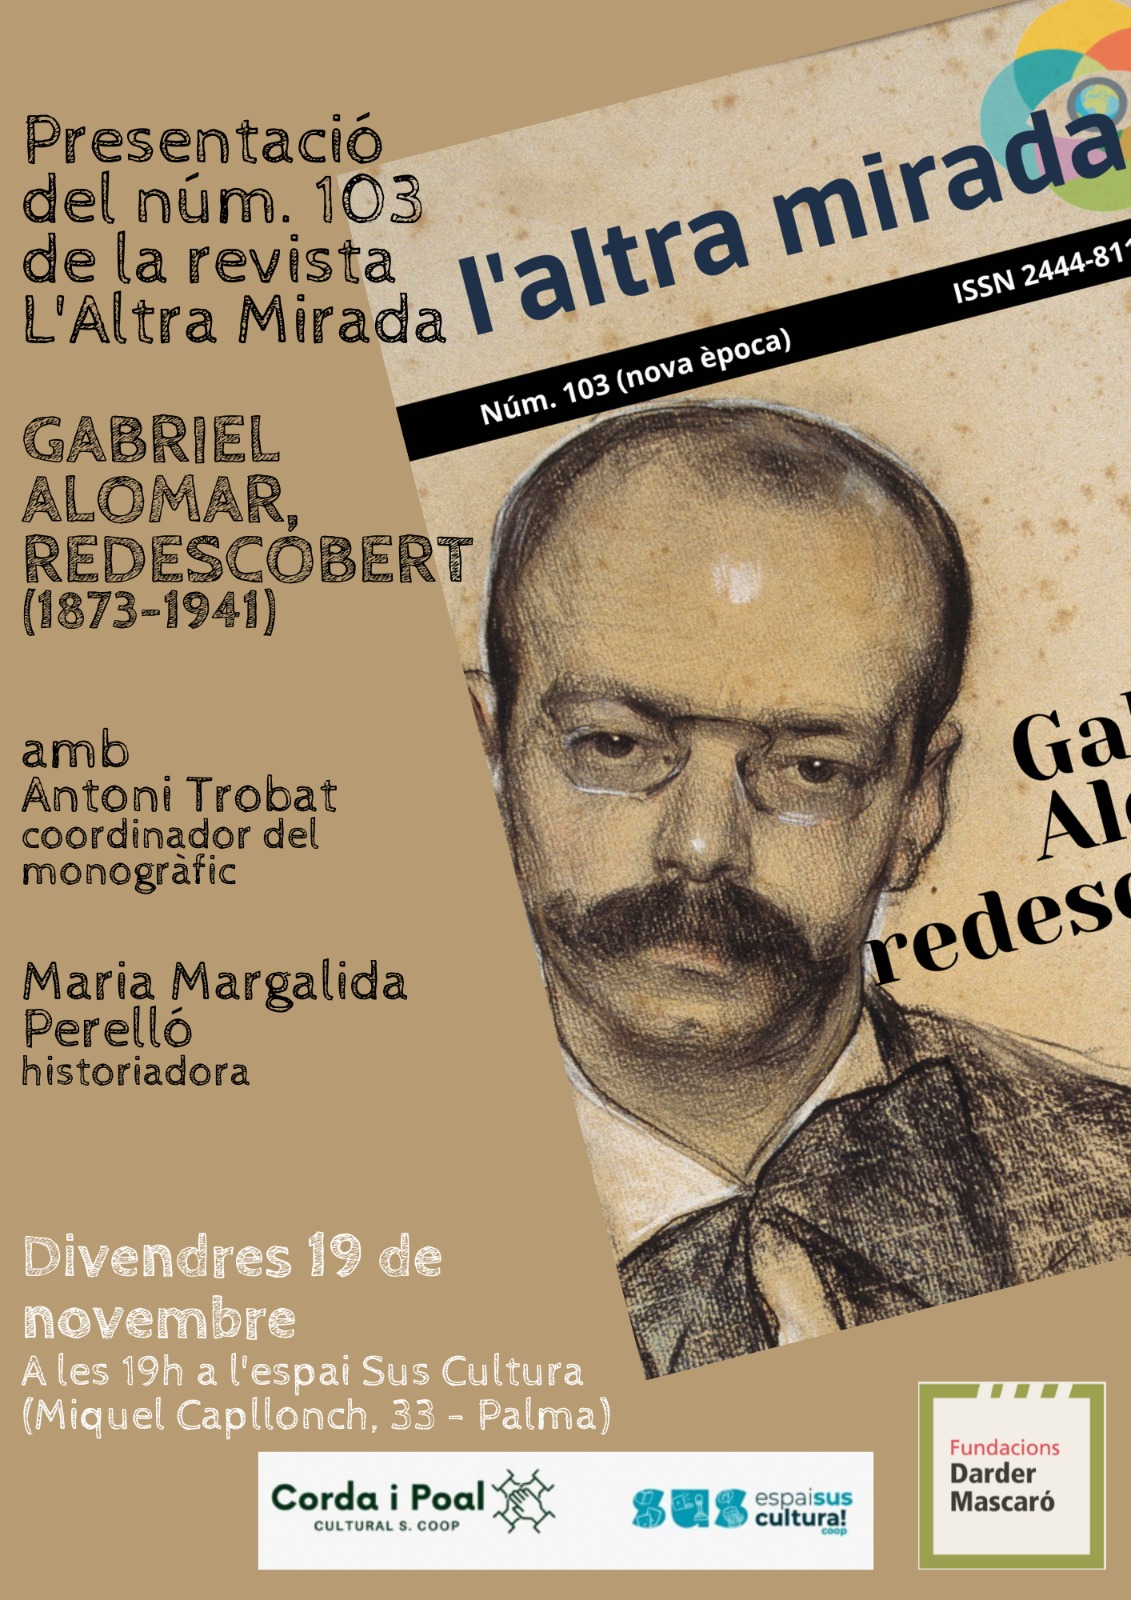 Presentació del núm. 103 de la revista L’altra mirada / Gabriel Alomar redescobert (1873-1941)